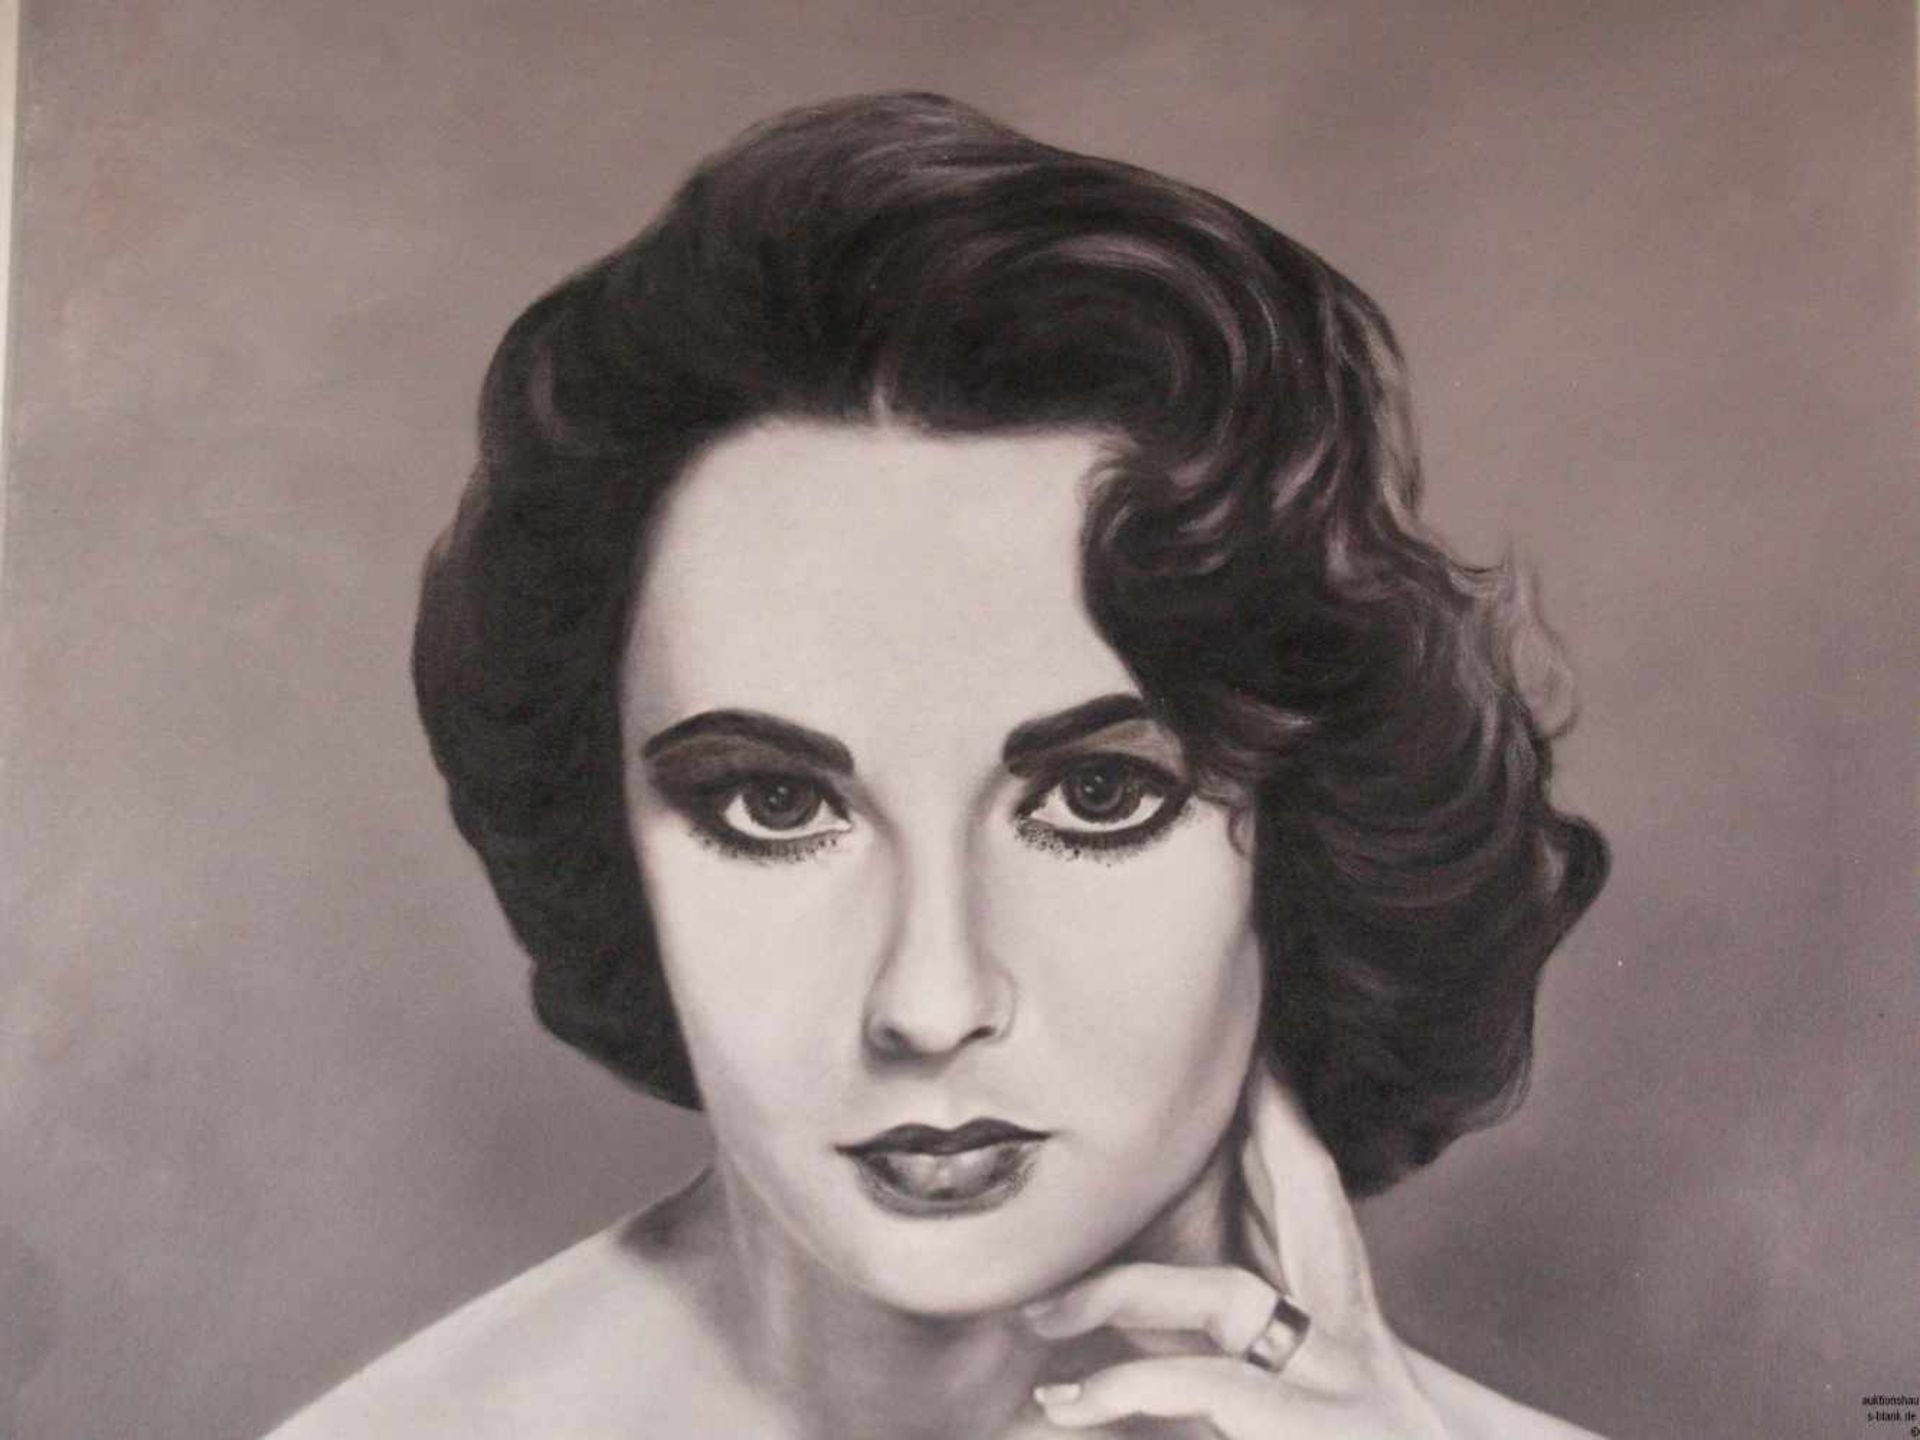 Unbekannt - "Liz Taylor", Öl auf Leinwand, schwarz/weißes Porträt der Schauspielerin Elizabeth - Bild 2 aus 7